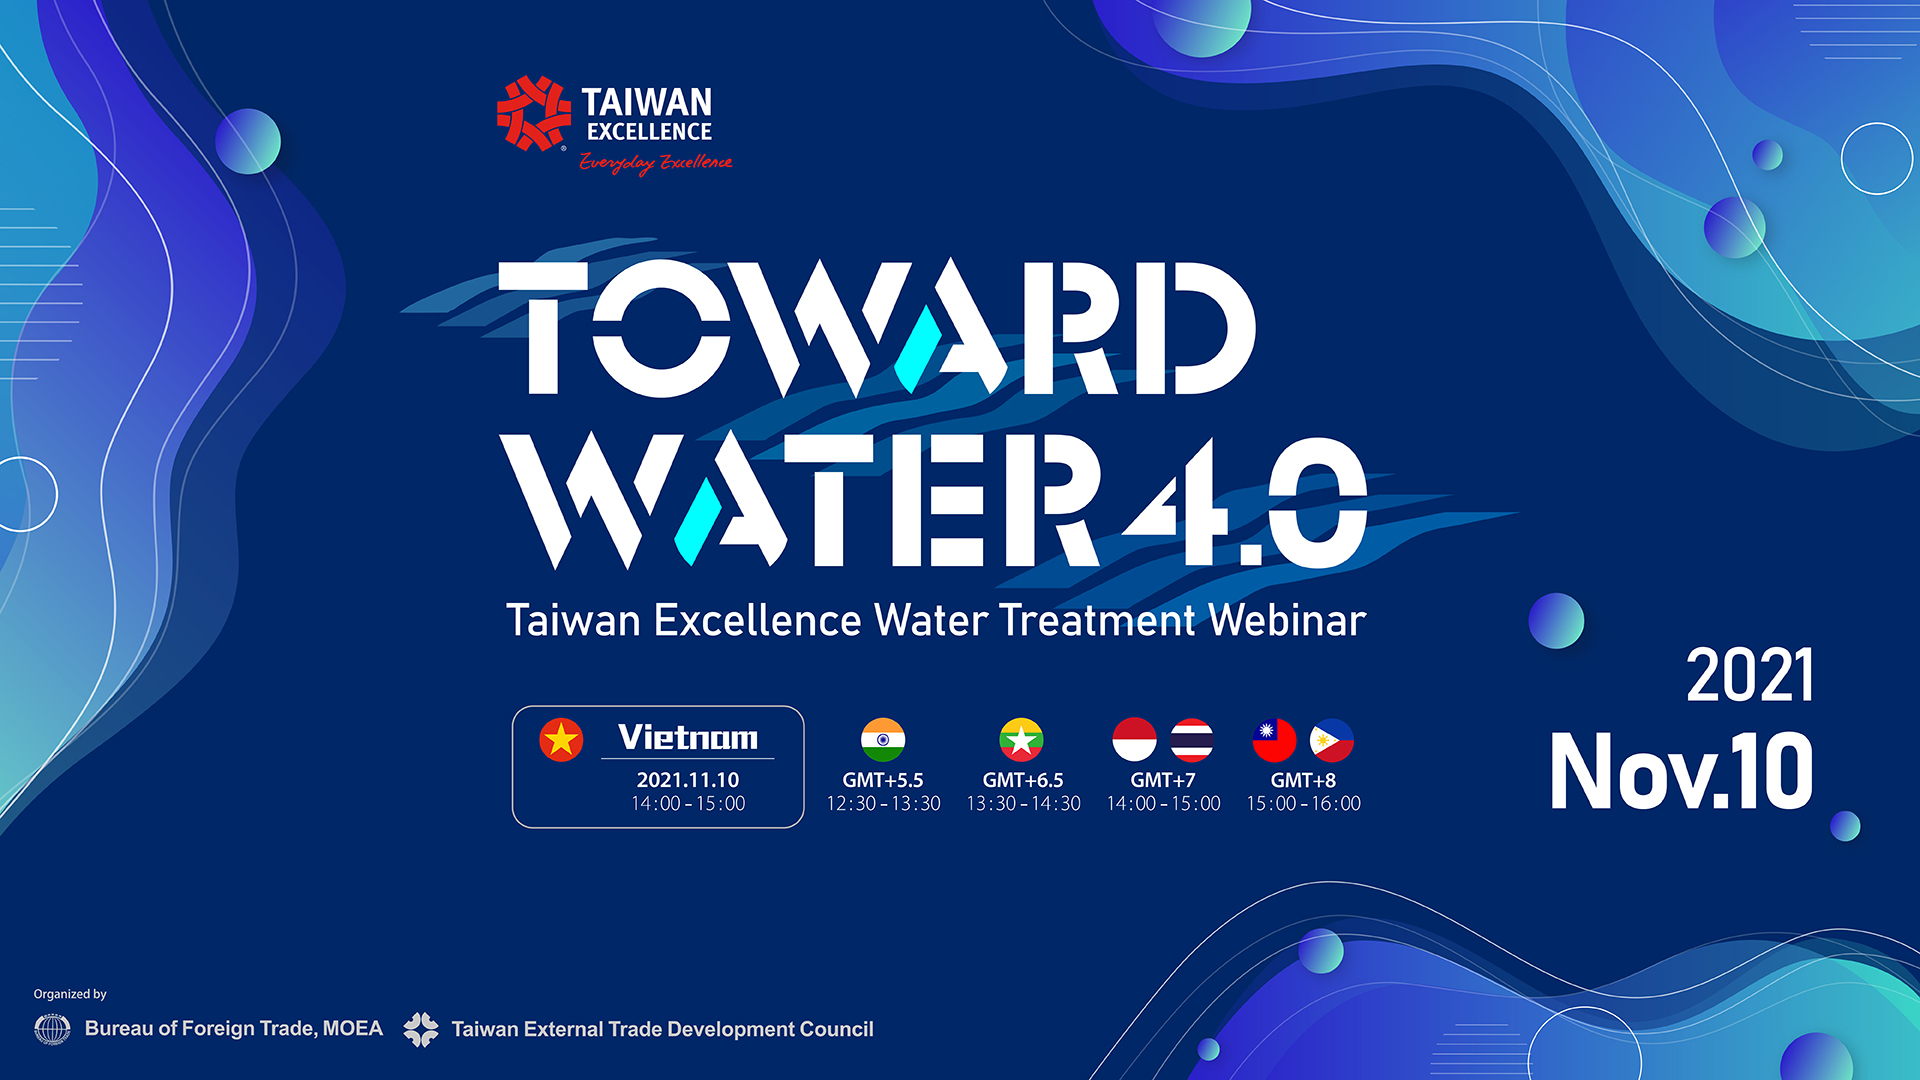 Taiwan Excellence giới thiệu công nghệ 4.0 và các cải tiến thông minh hàng đầu trong ngành nước tại Triển lãm Vietwater 2021